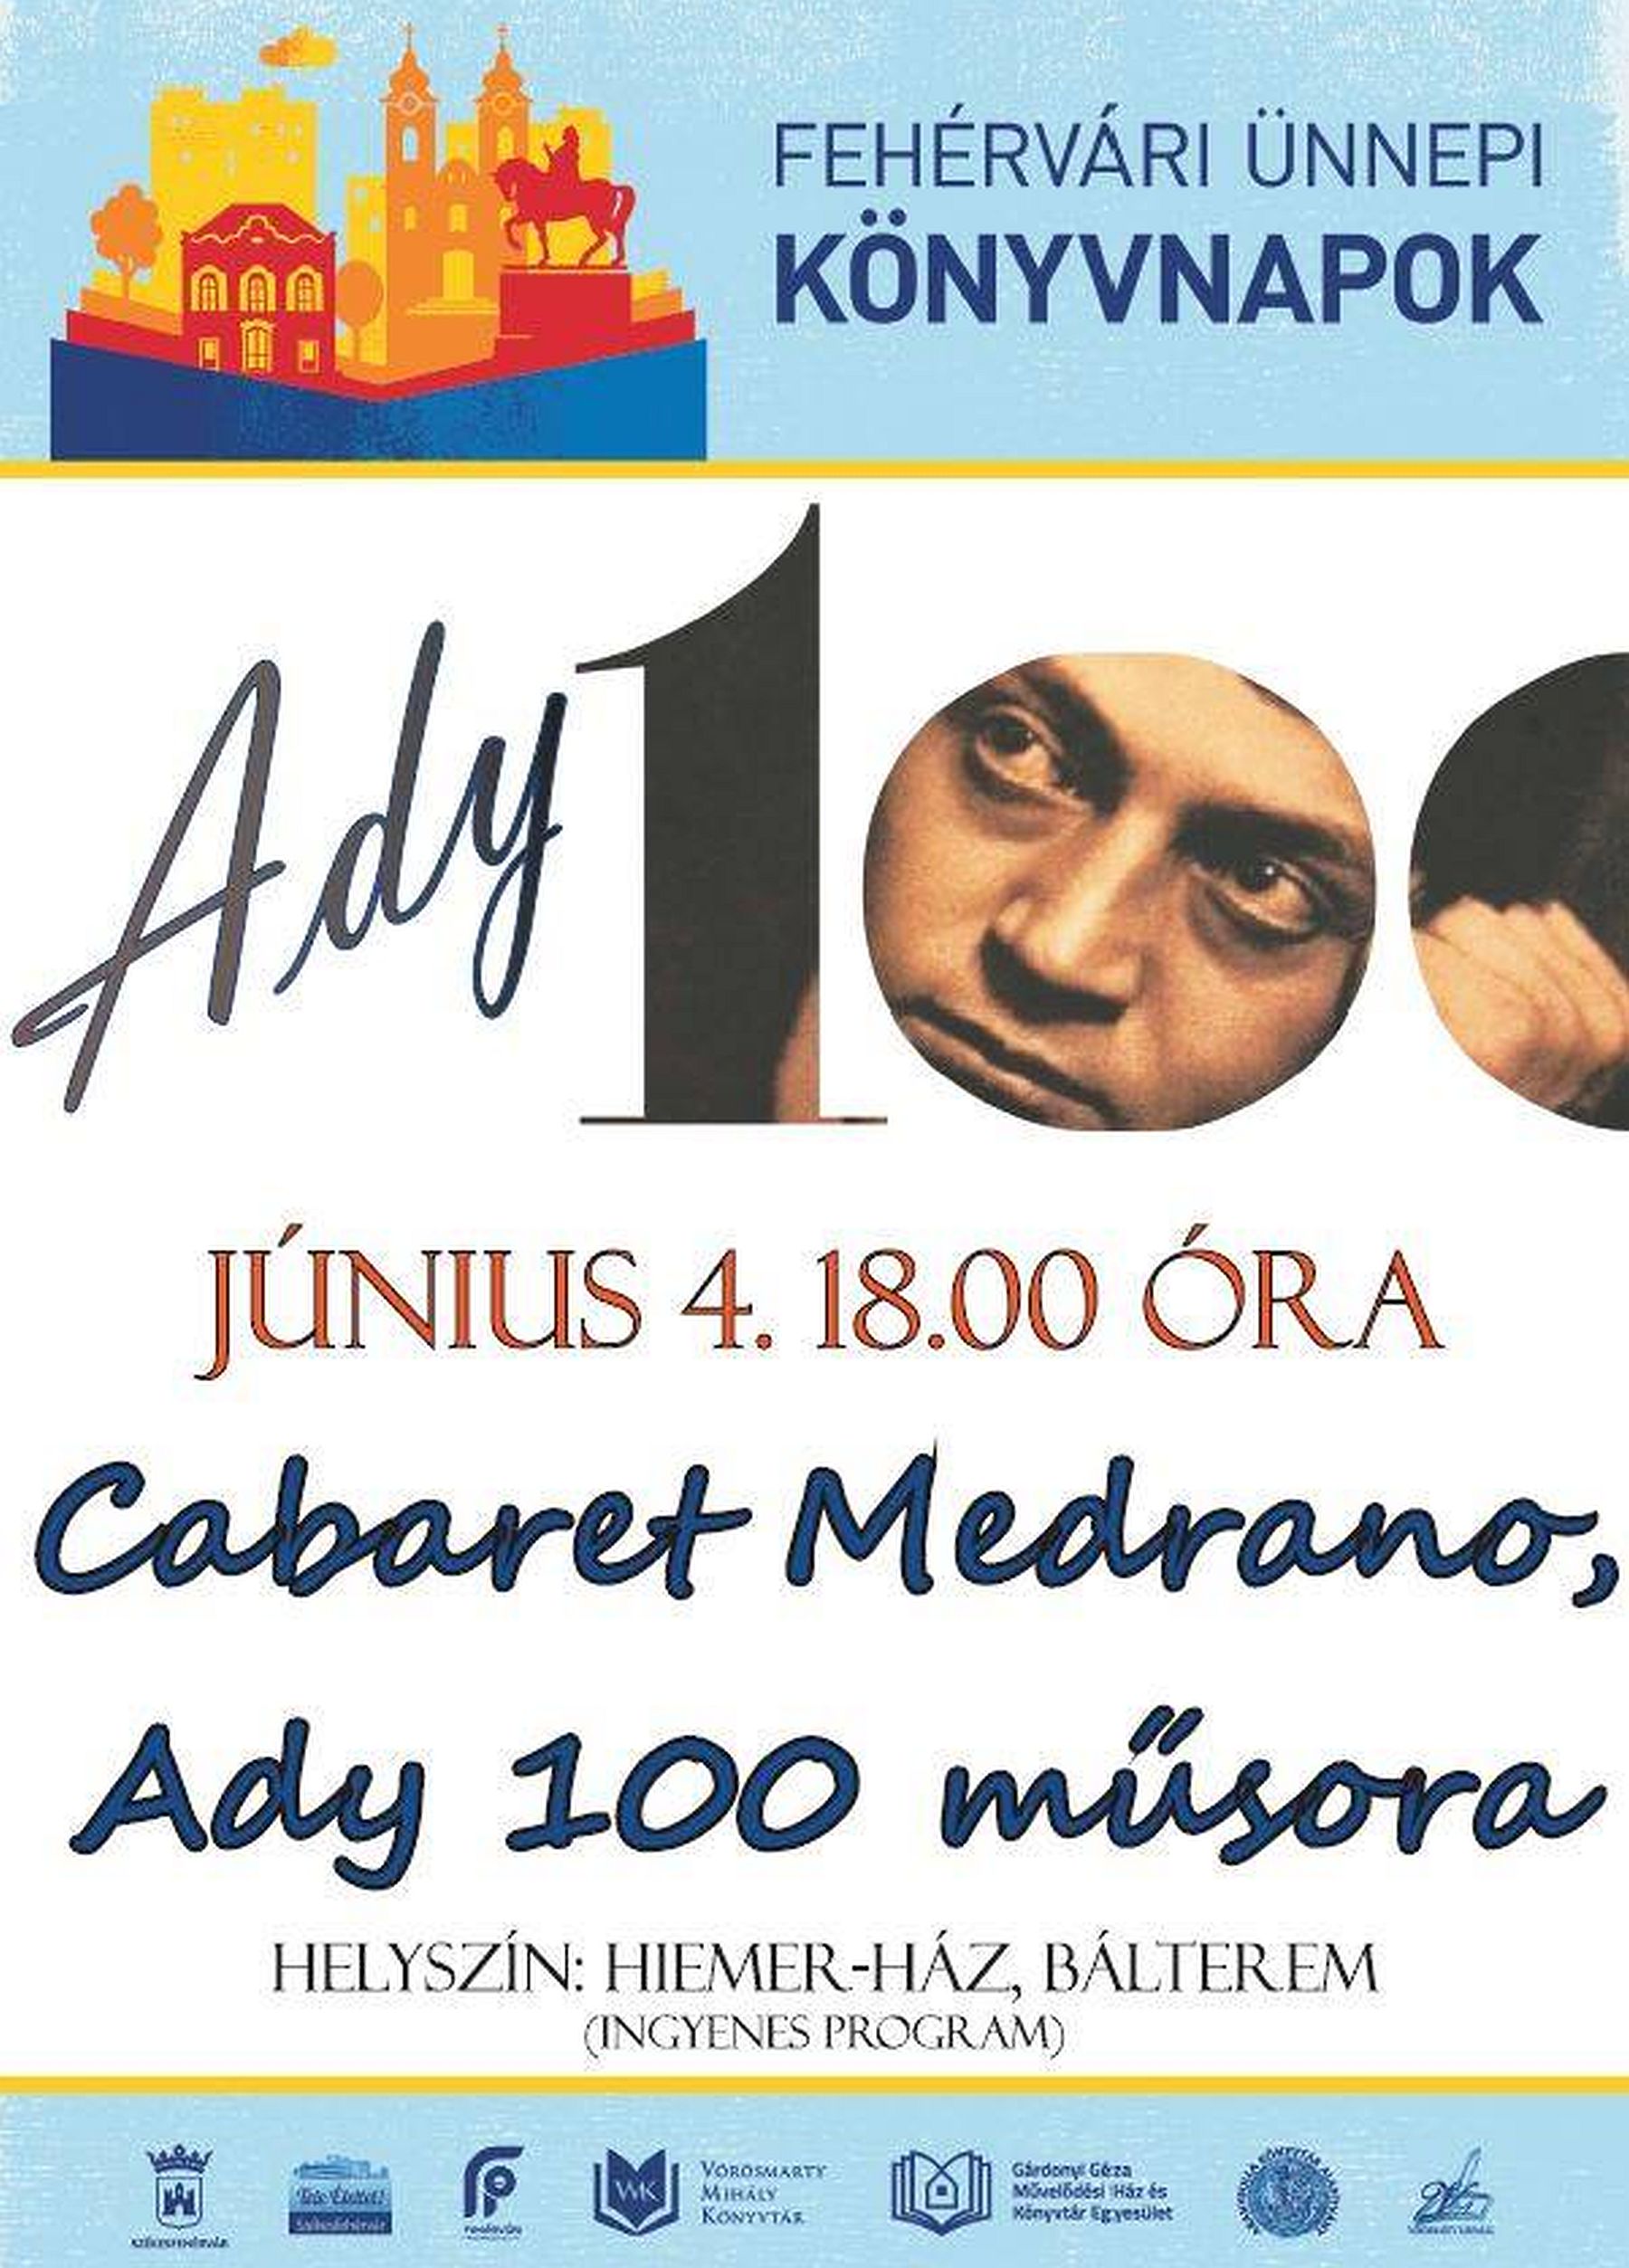 Ady 100 - a Cabaret Medrano koncertje a Hiemer-ház báltermében